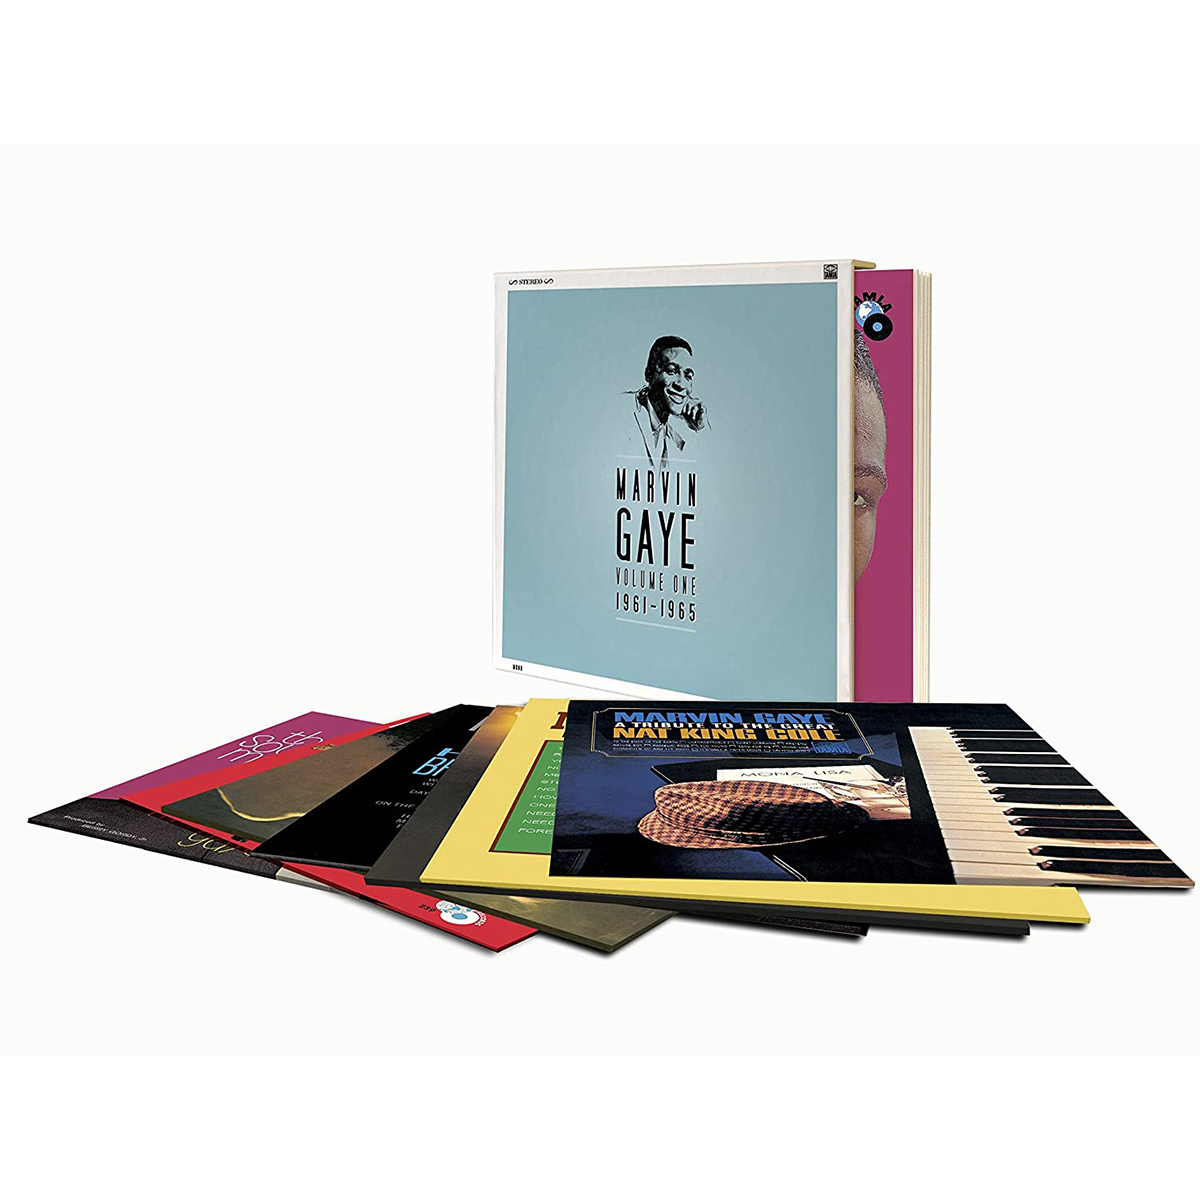 Marvin Gaye - Marvin Gaye 1961 - 1965 (7CD-Box-Set)